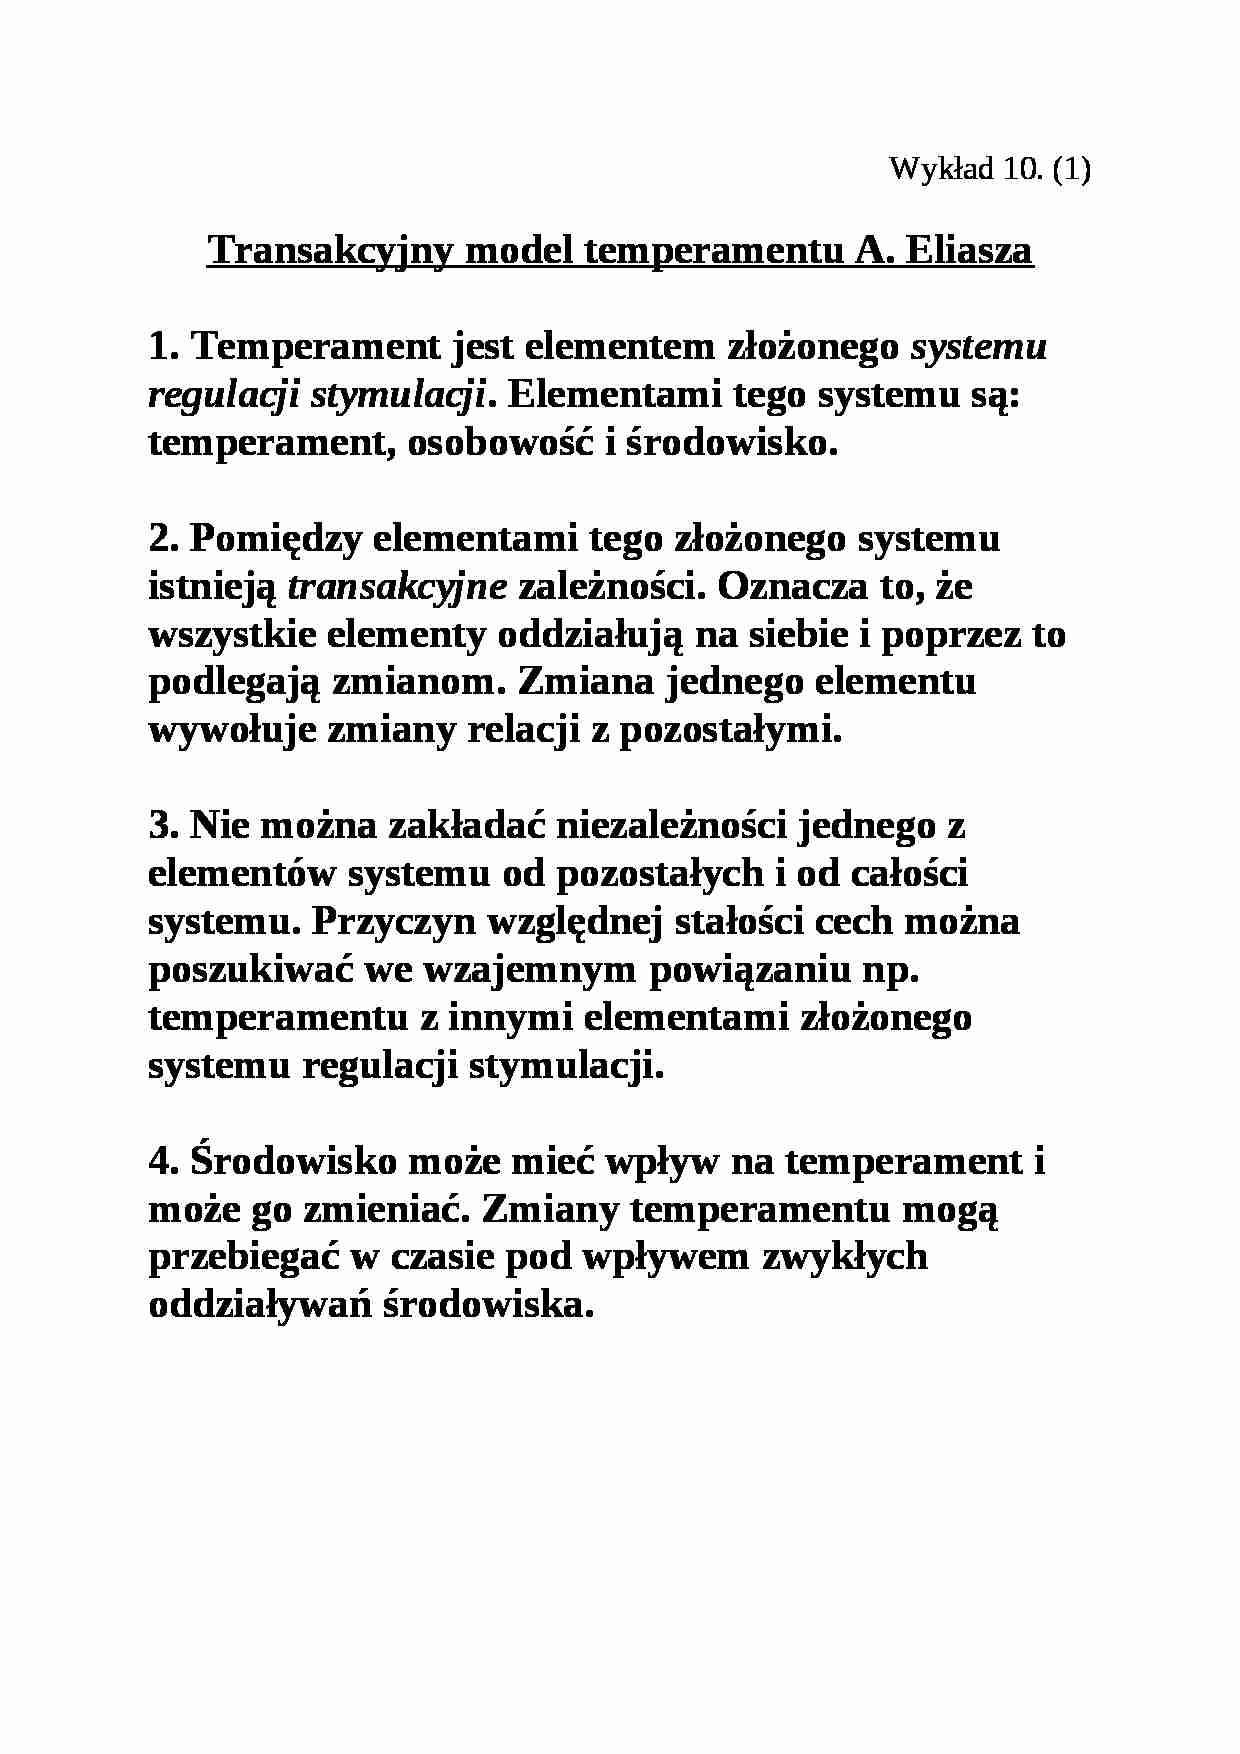 Transakcyjny model temperamentu A. Eliasza - strona 1